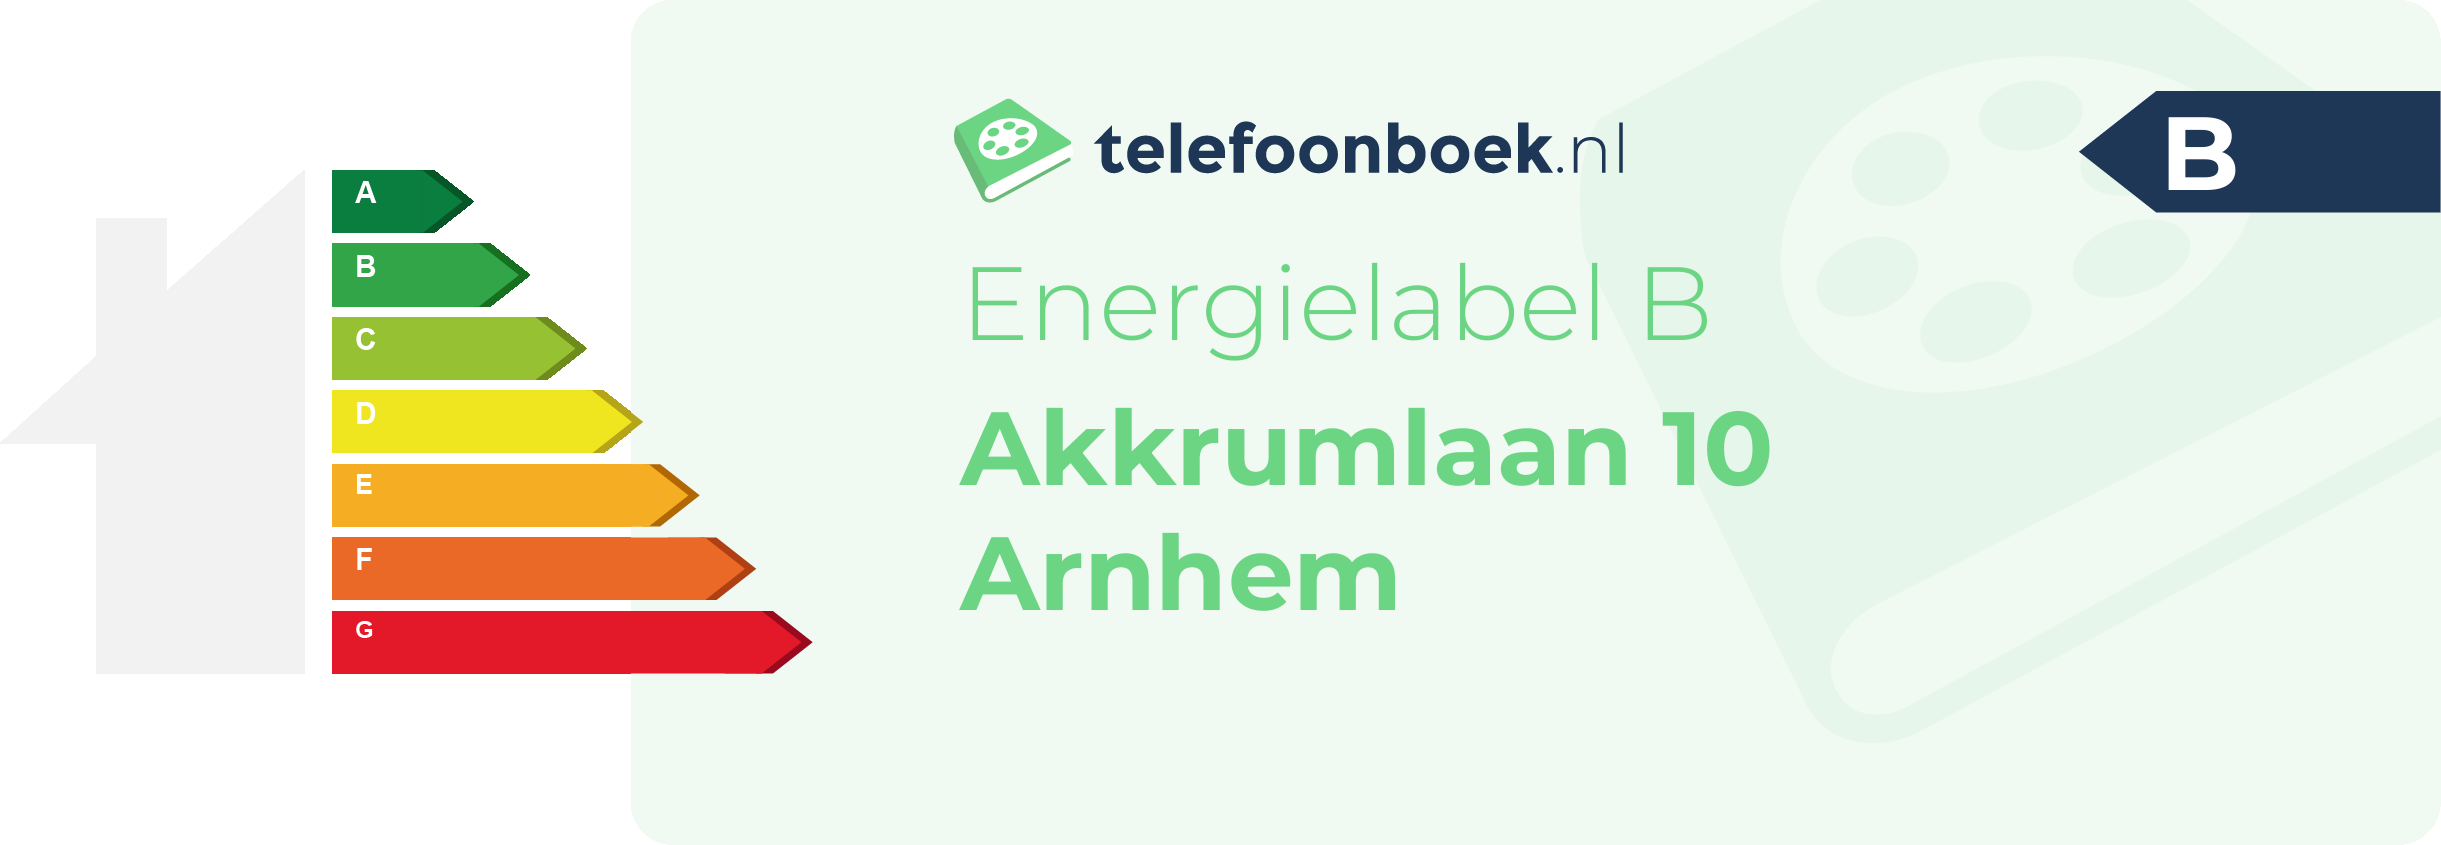 Energielabel Akkrumlaan 10 Arnhem